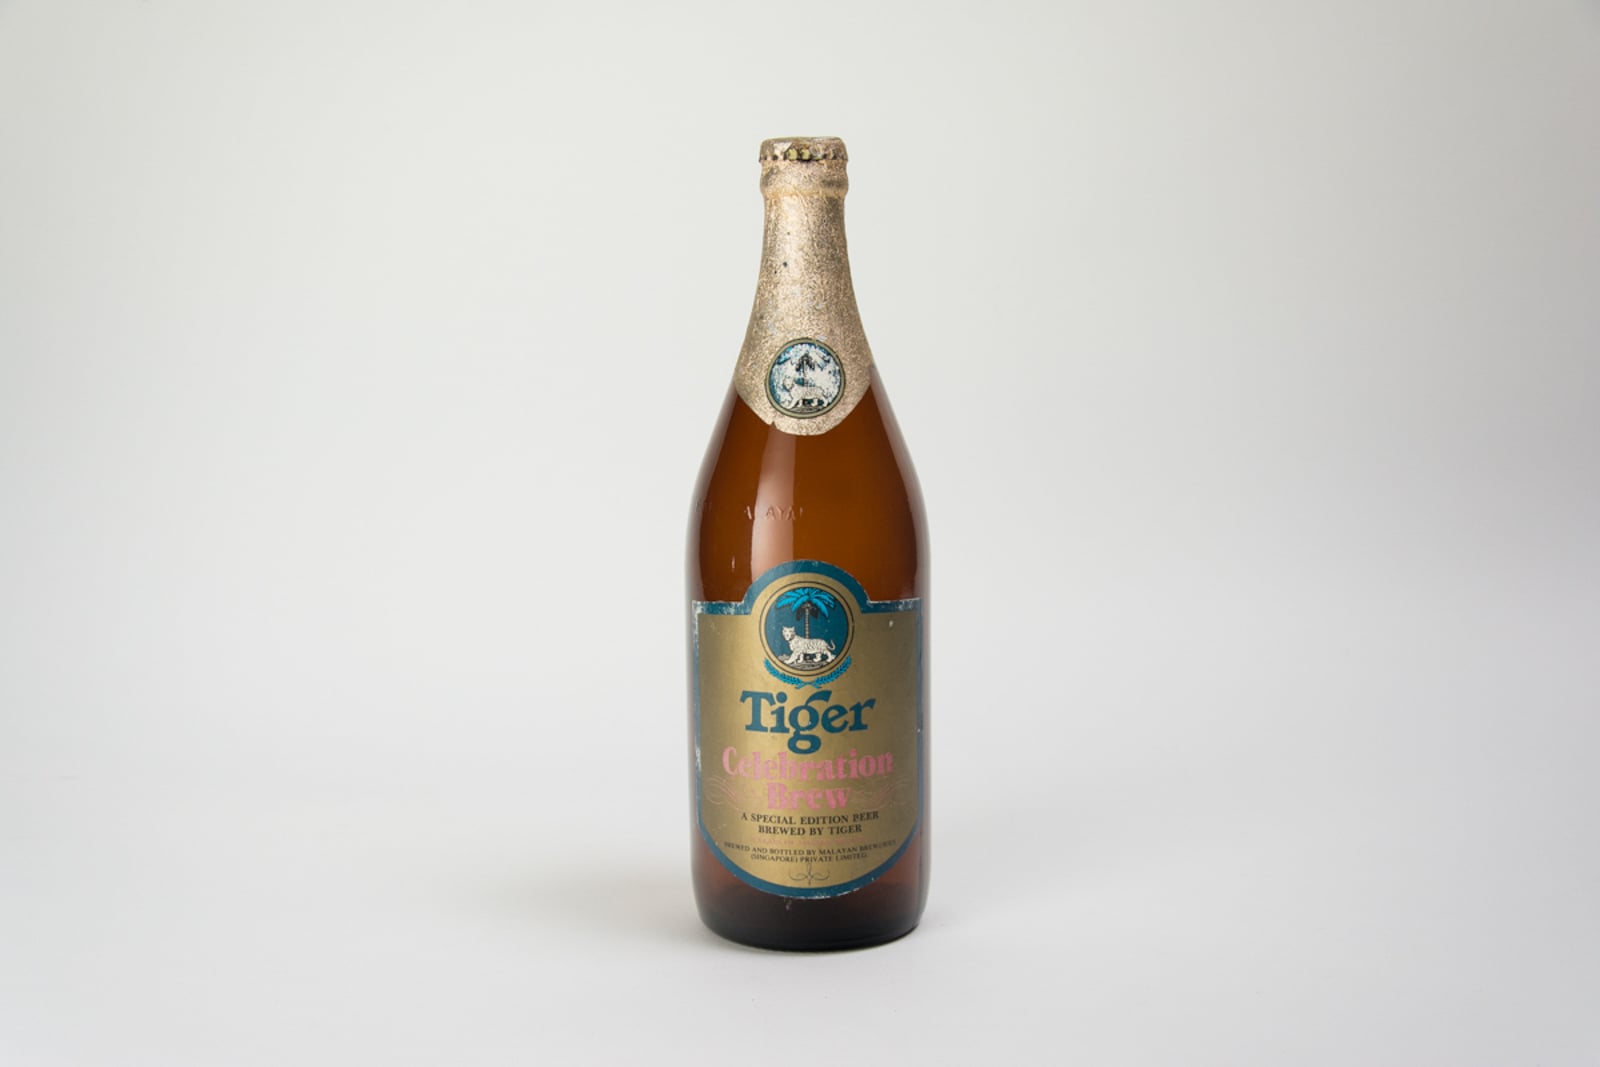 Tiger Celebration Brew Vintage Bottle (Matt Gold Label)